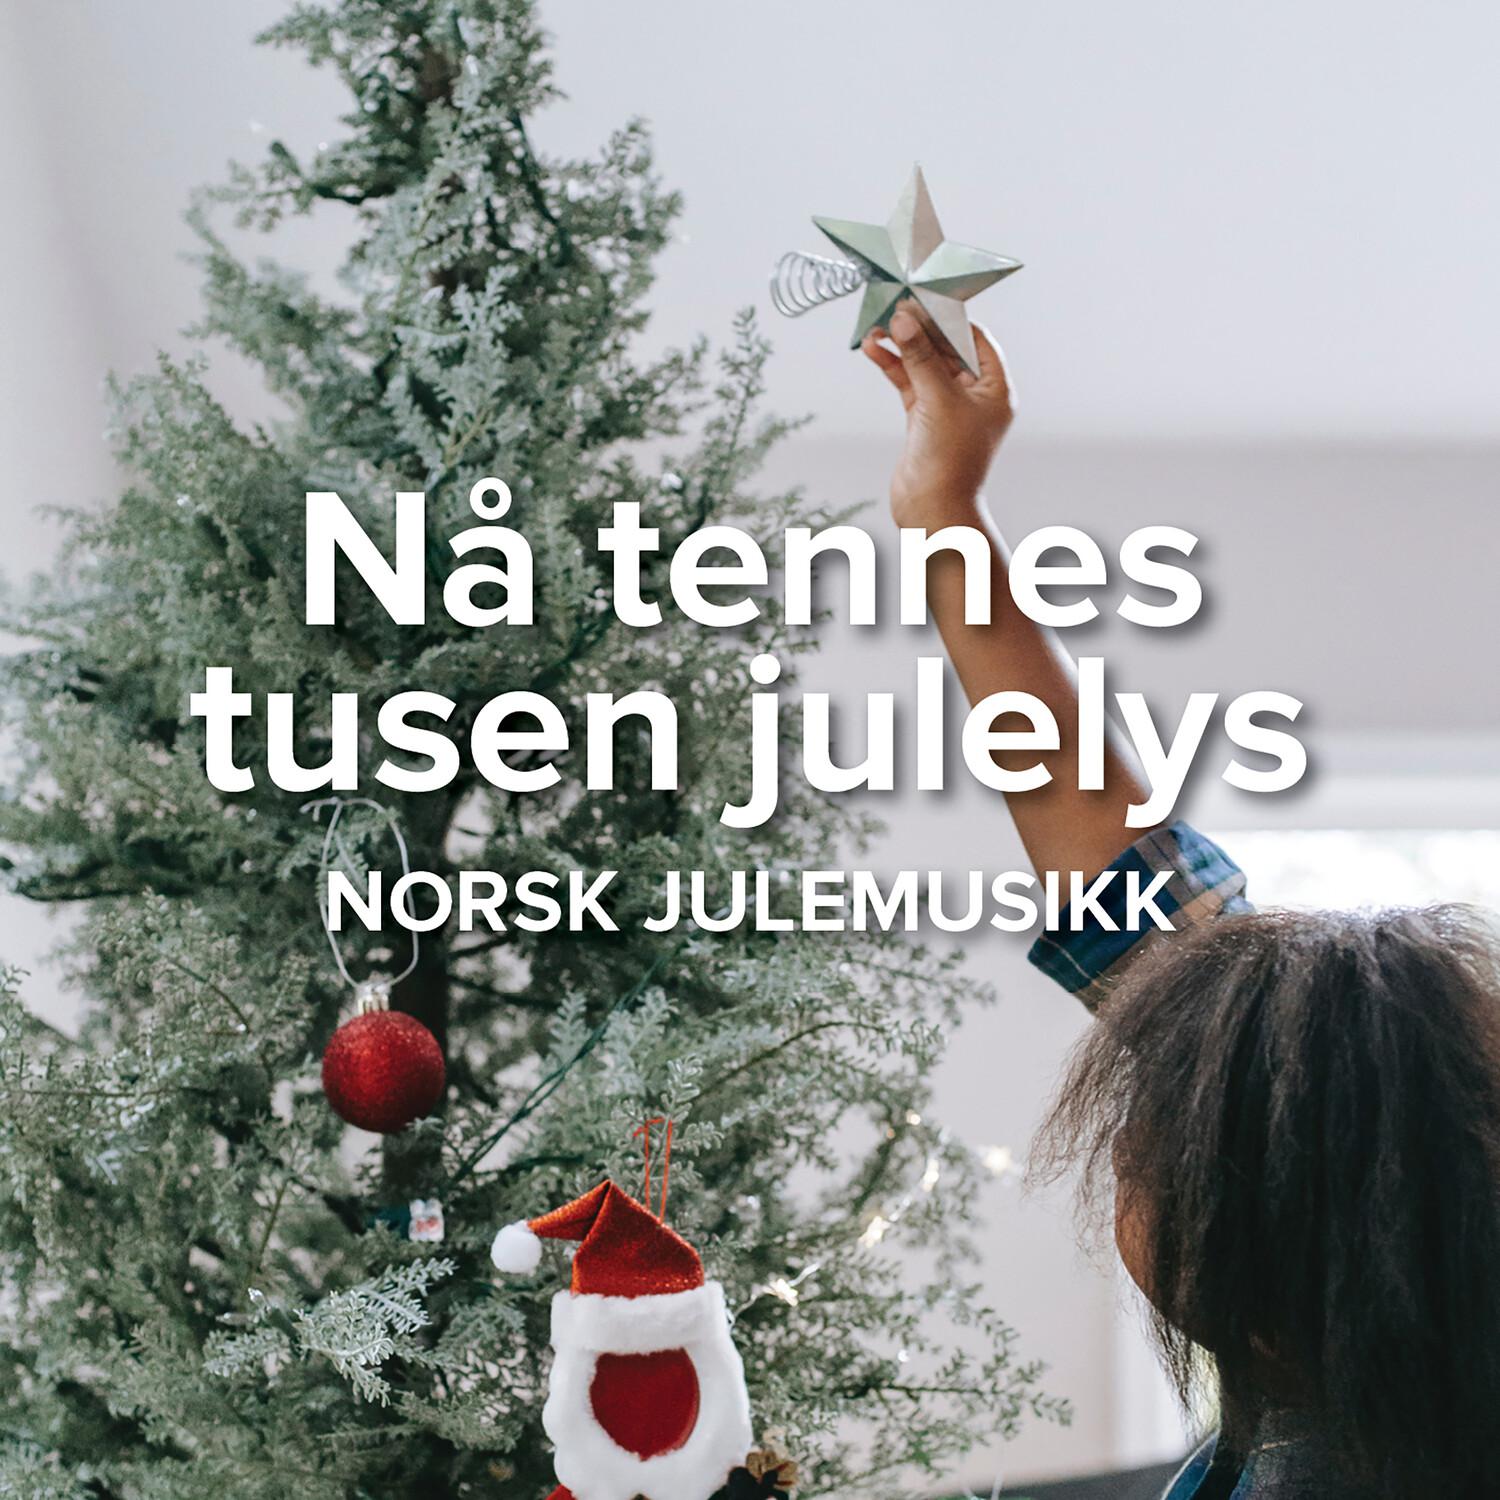 N tennes tusen julelys  Norsk julemusikk